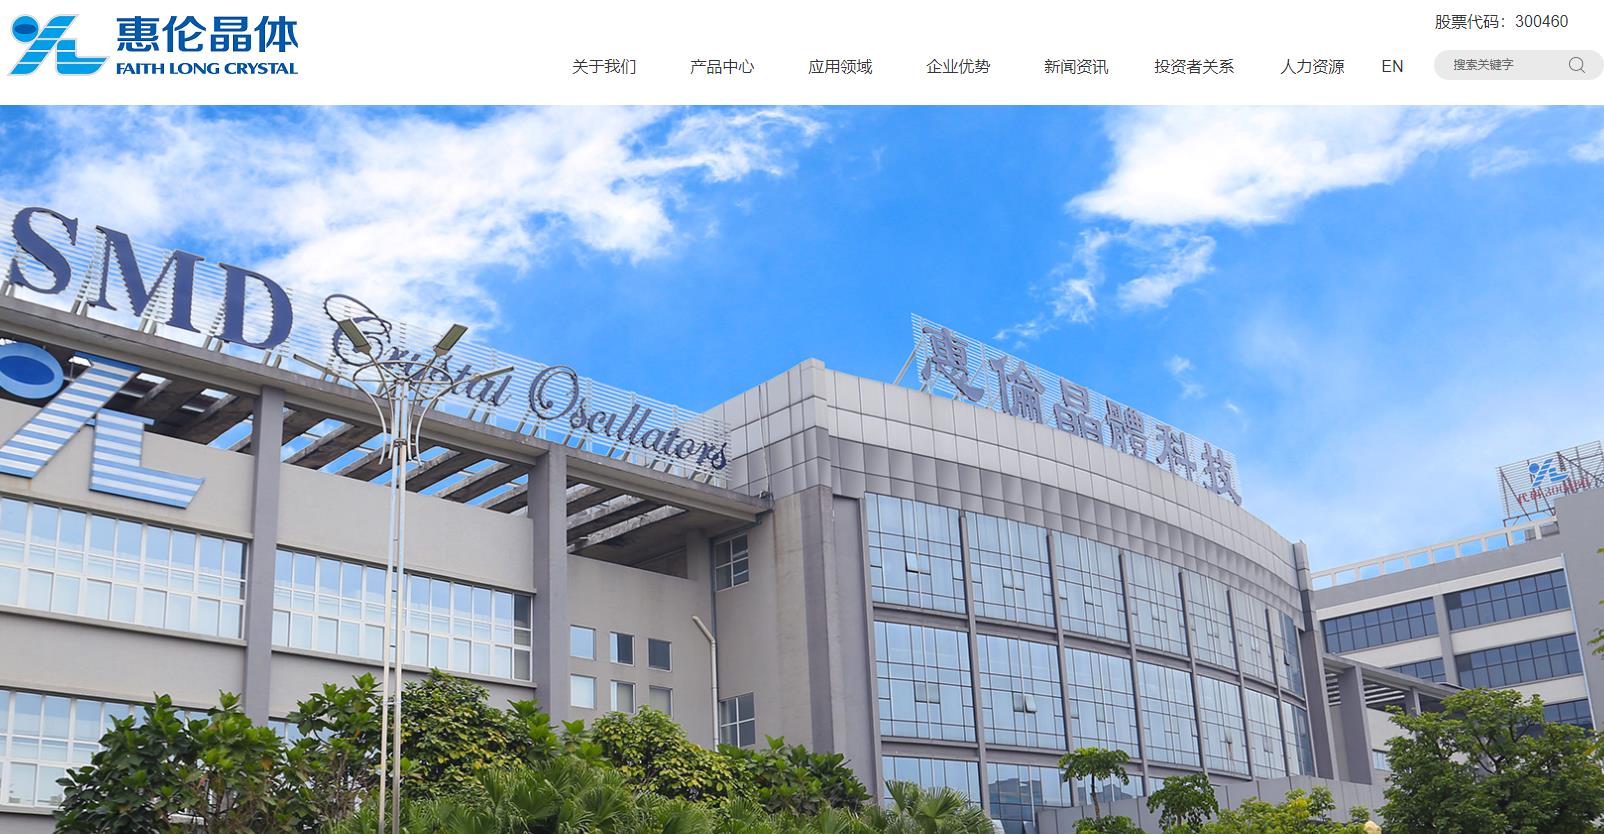 东莞市惠伦晶体高基频小尺寸石英晶片产业项目总投资 12511.61万元